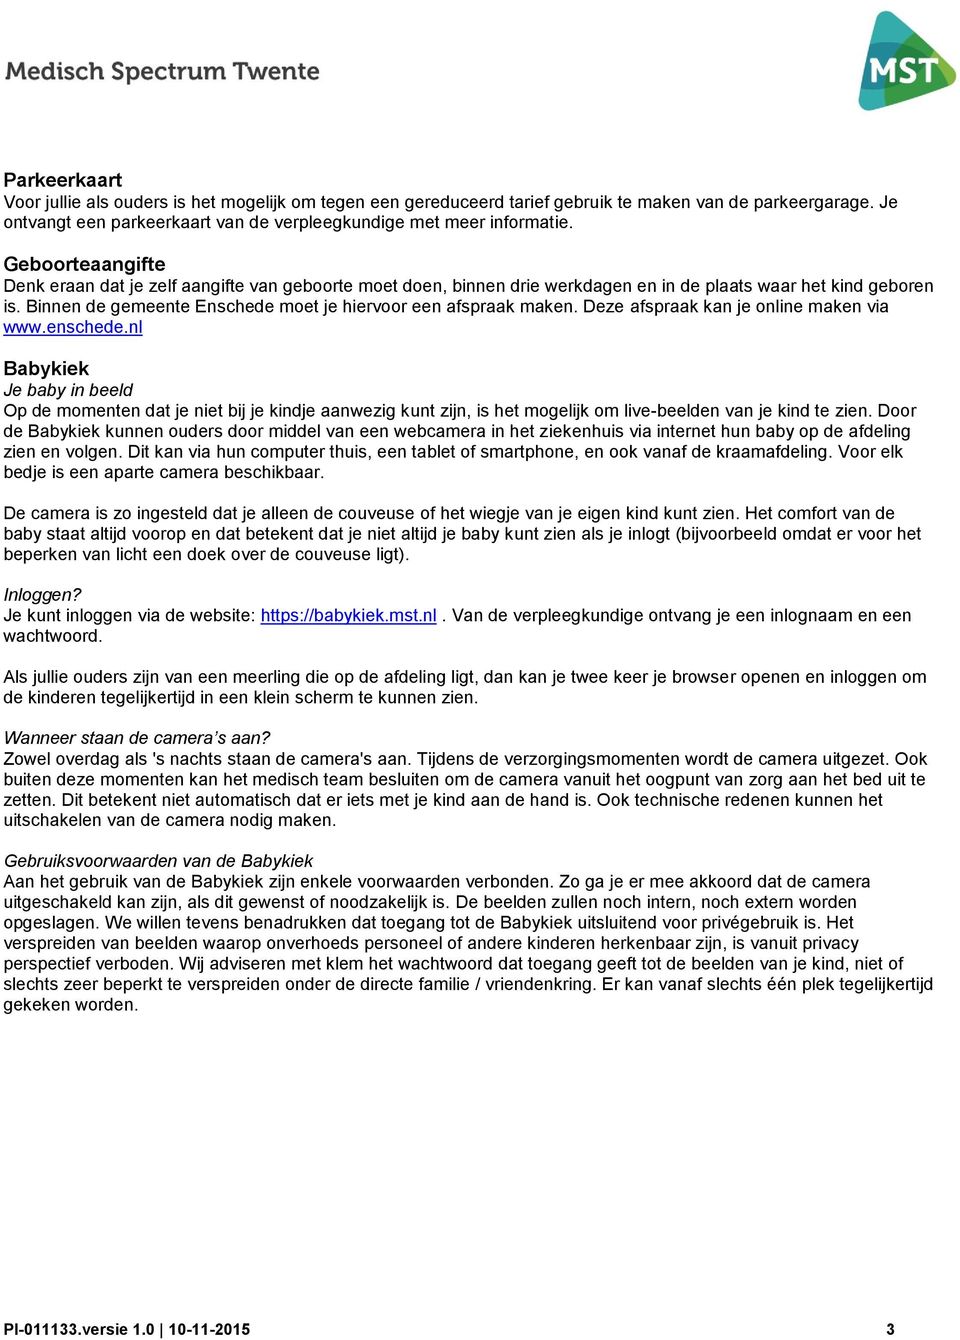 Binnen de gemeente Enschede moet je hiervoor een afspraak maken. Deze afspraak kan je online maken via www.enschede.